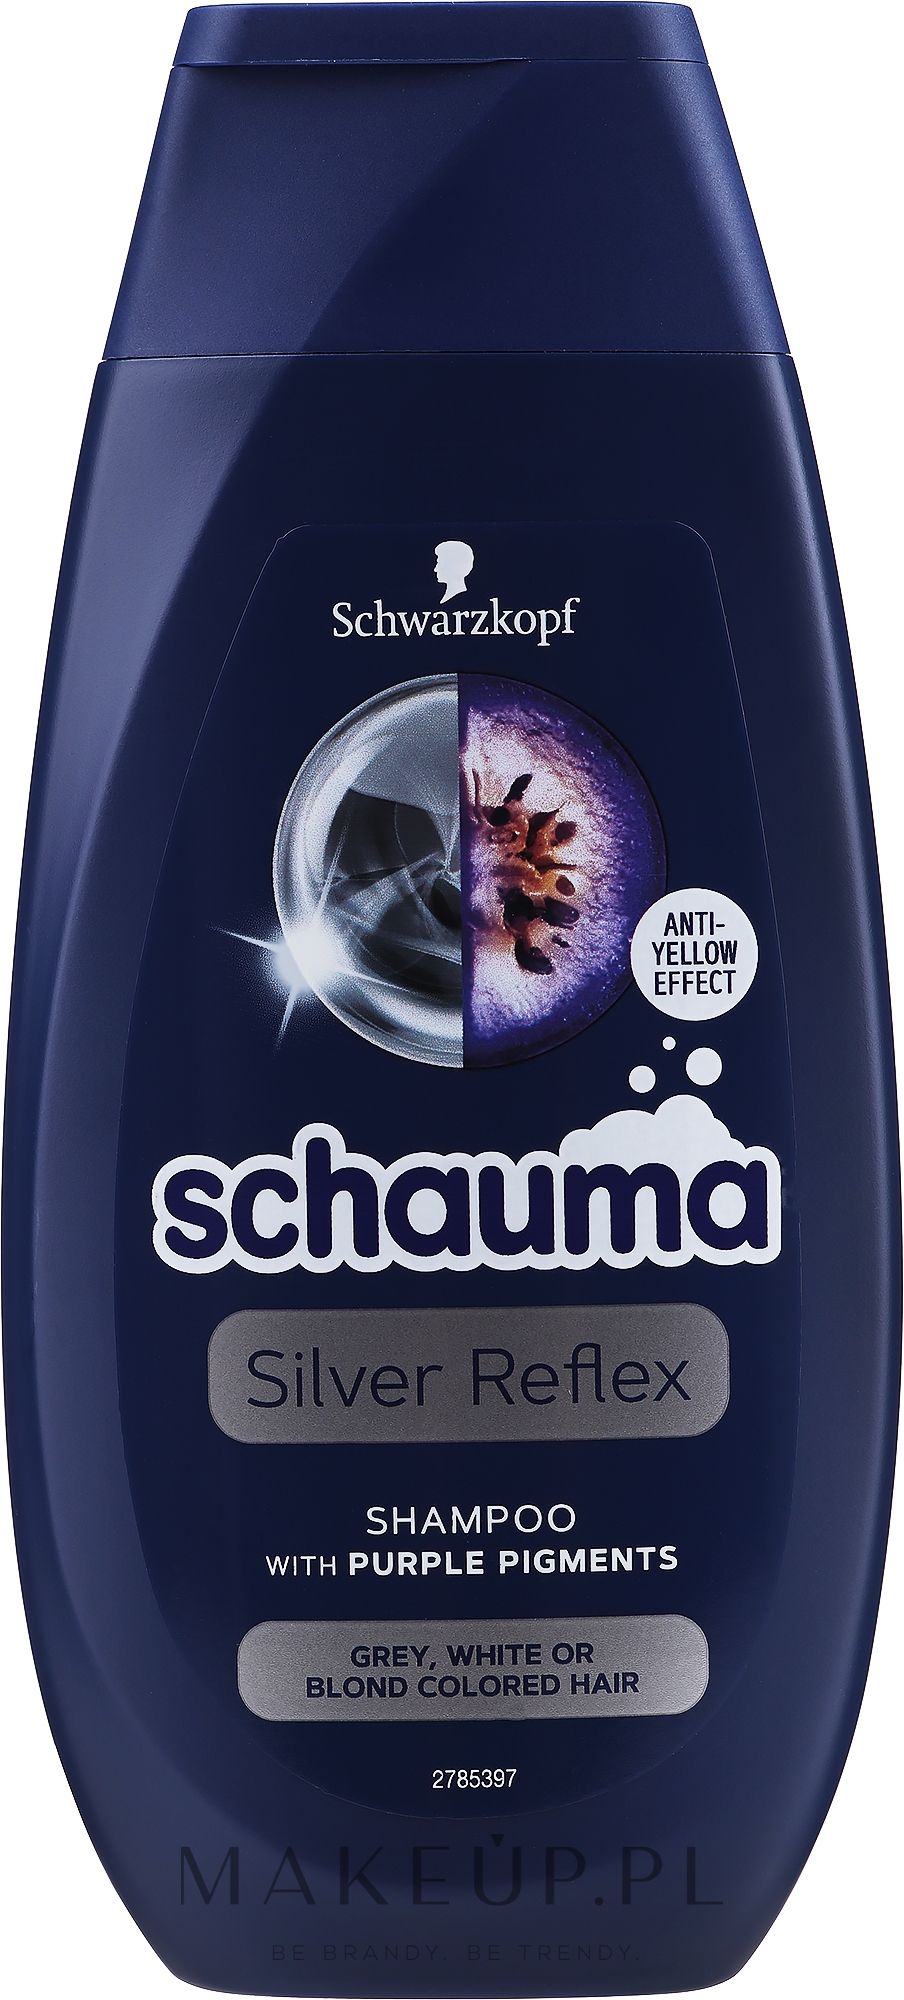 szampon schauma silver reflex opinie